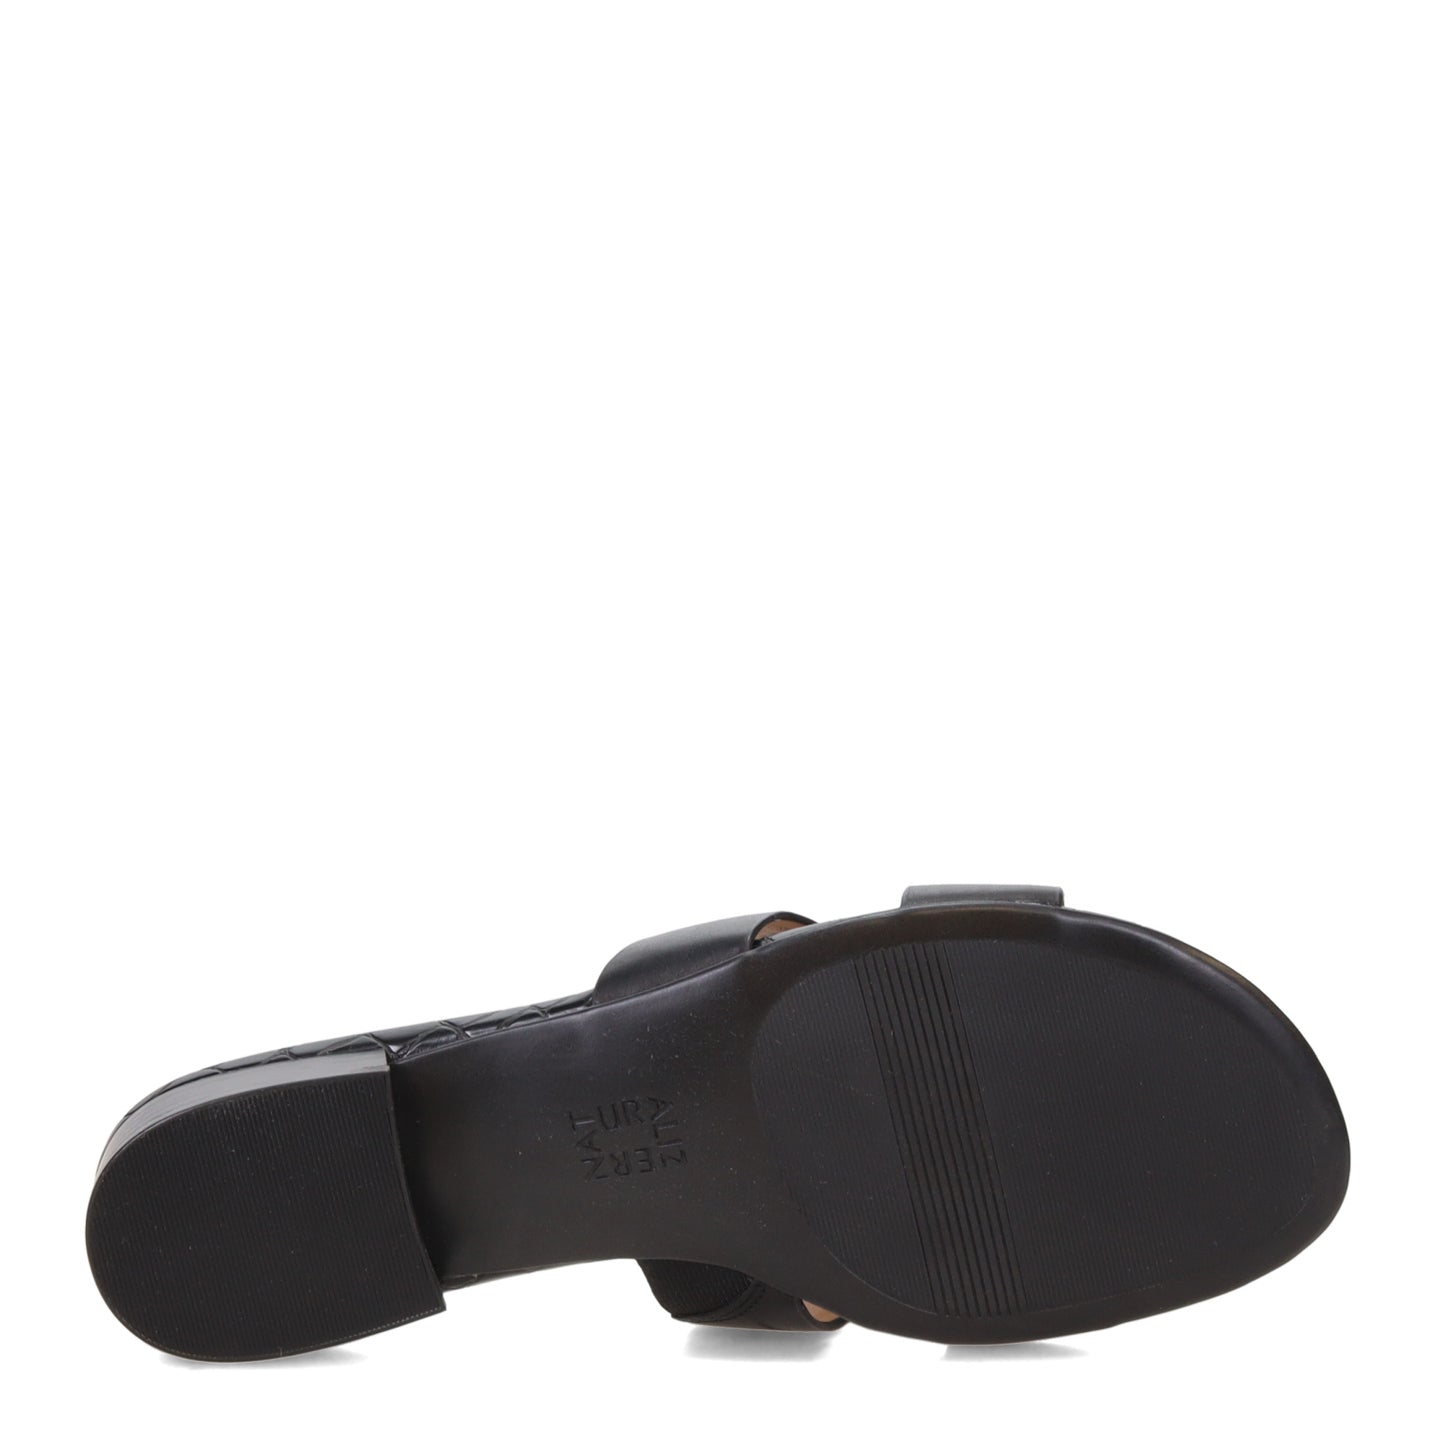 Peltz Shoes  Women's Naturalizer Misty Sandal Black I9024L4002